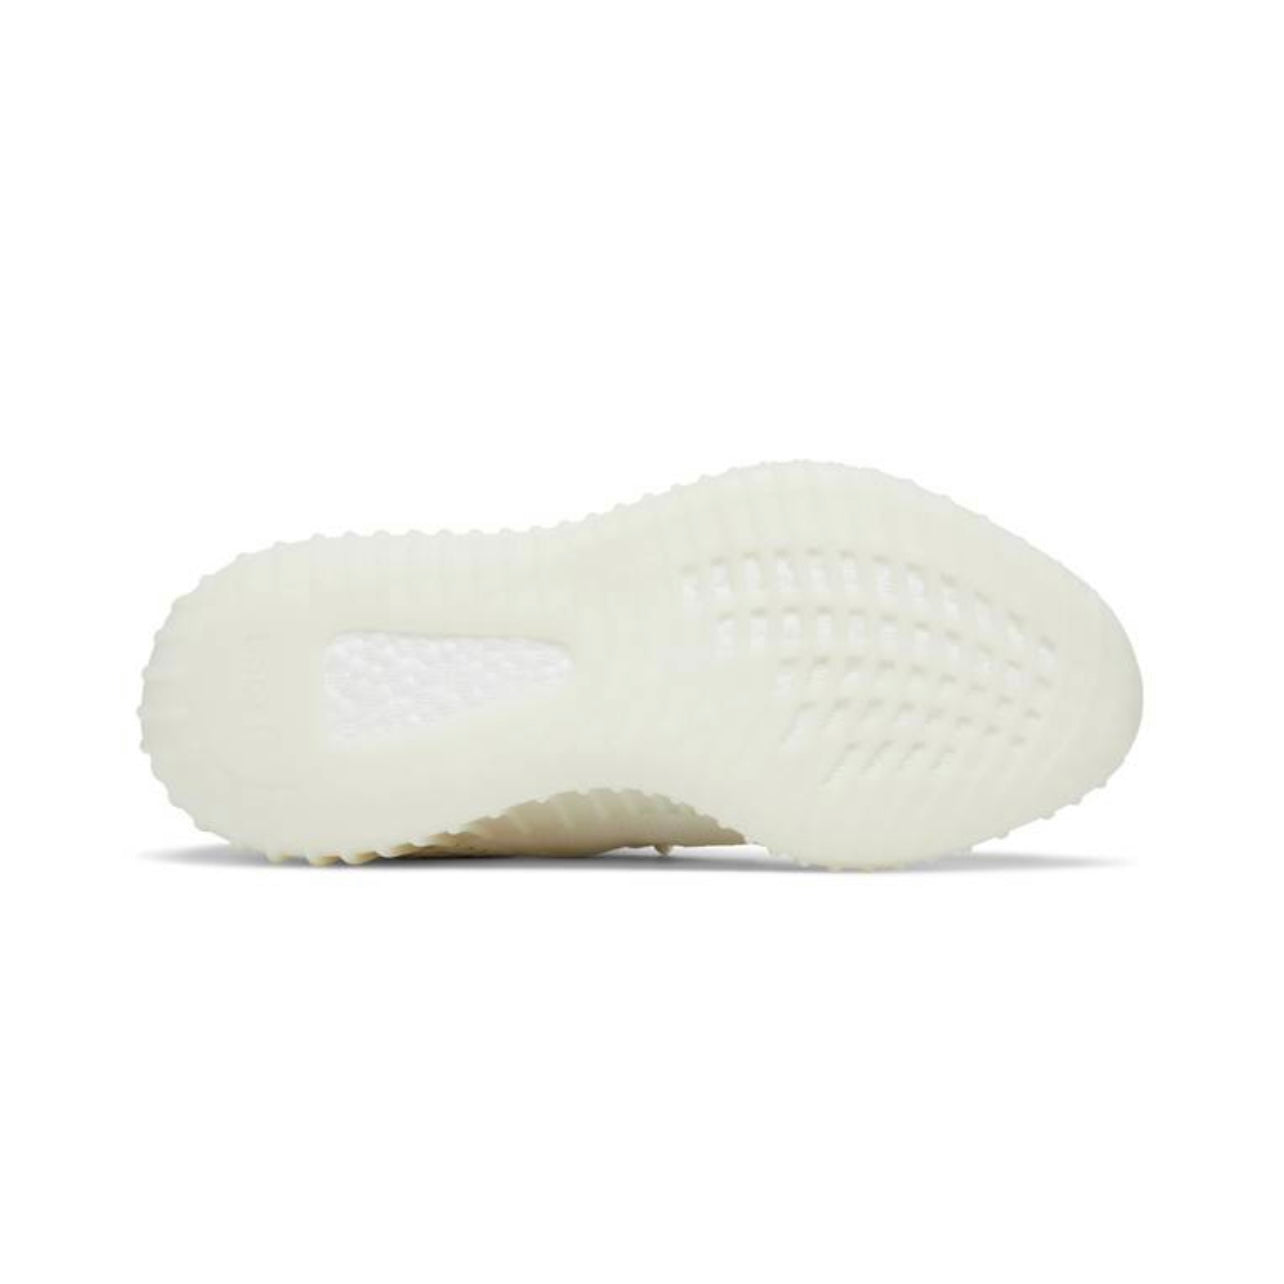 Adidas Yeezy Boost 350 V2 “Bone”